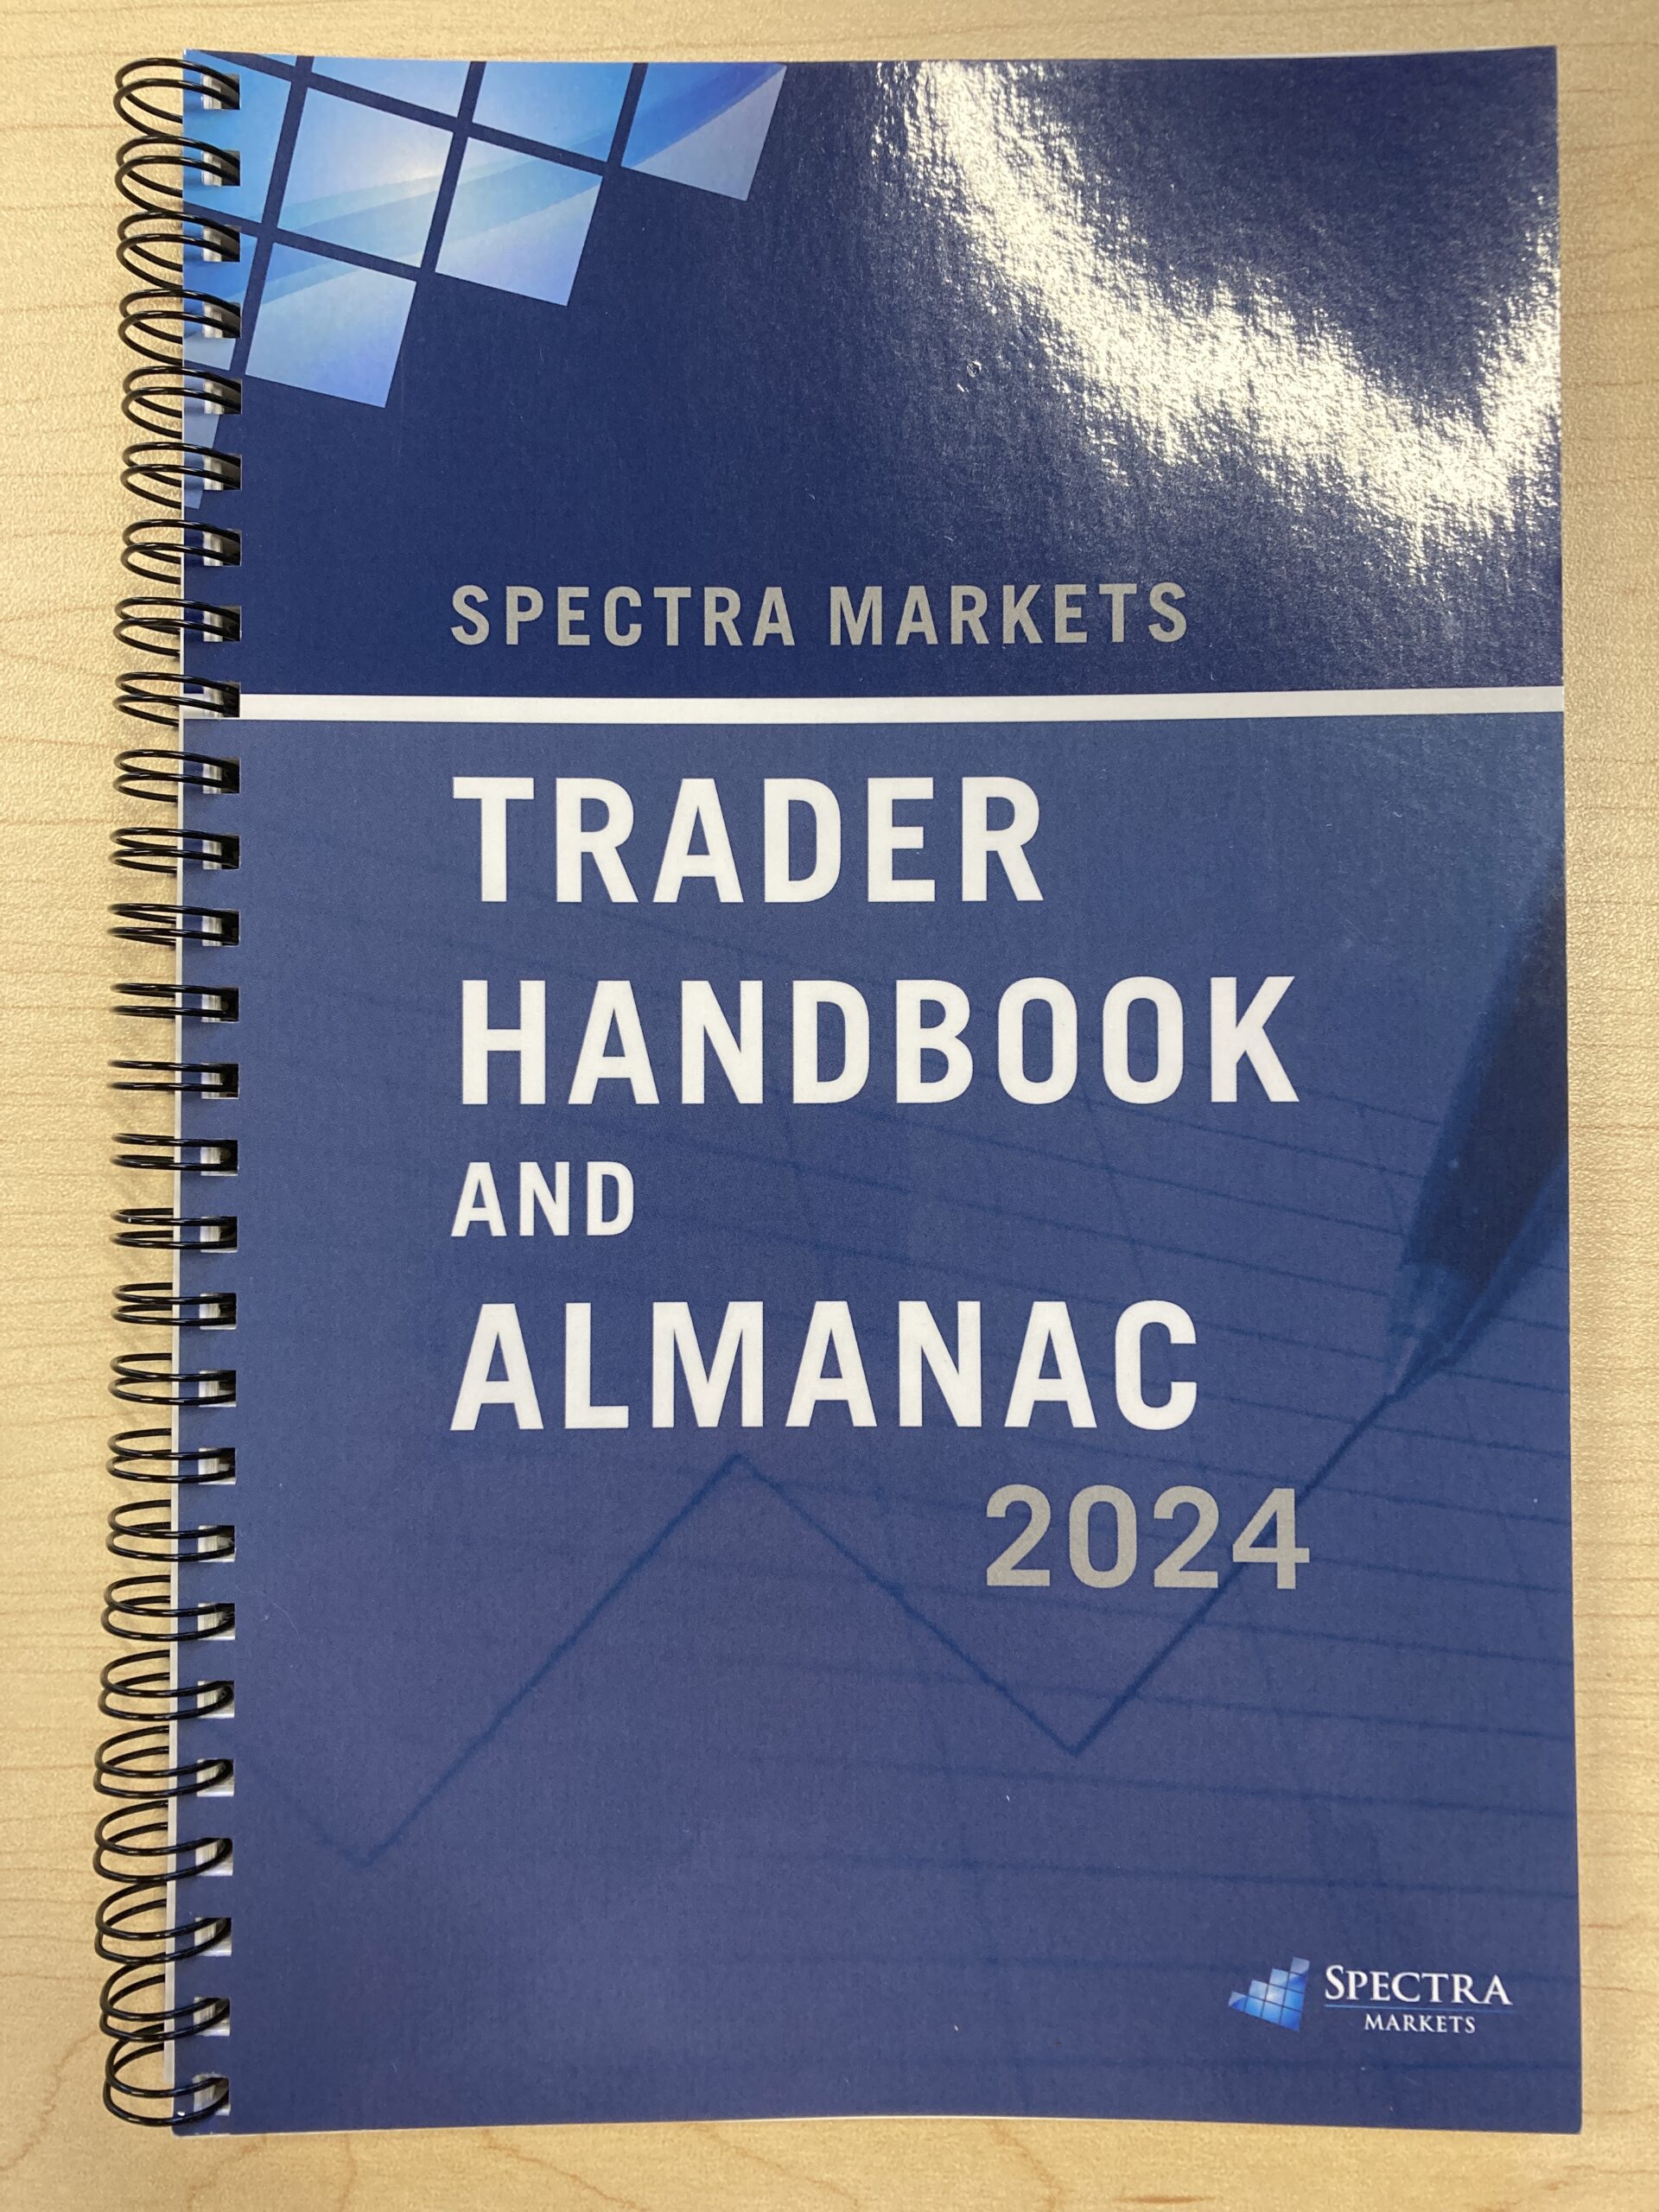 The 2024 Almanac is Ready! Spectra Markets